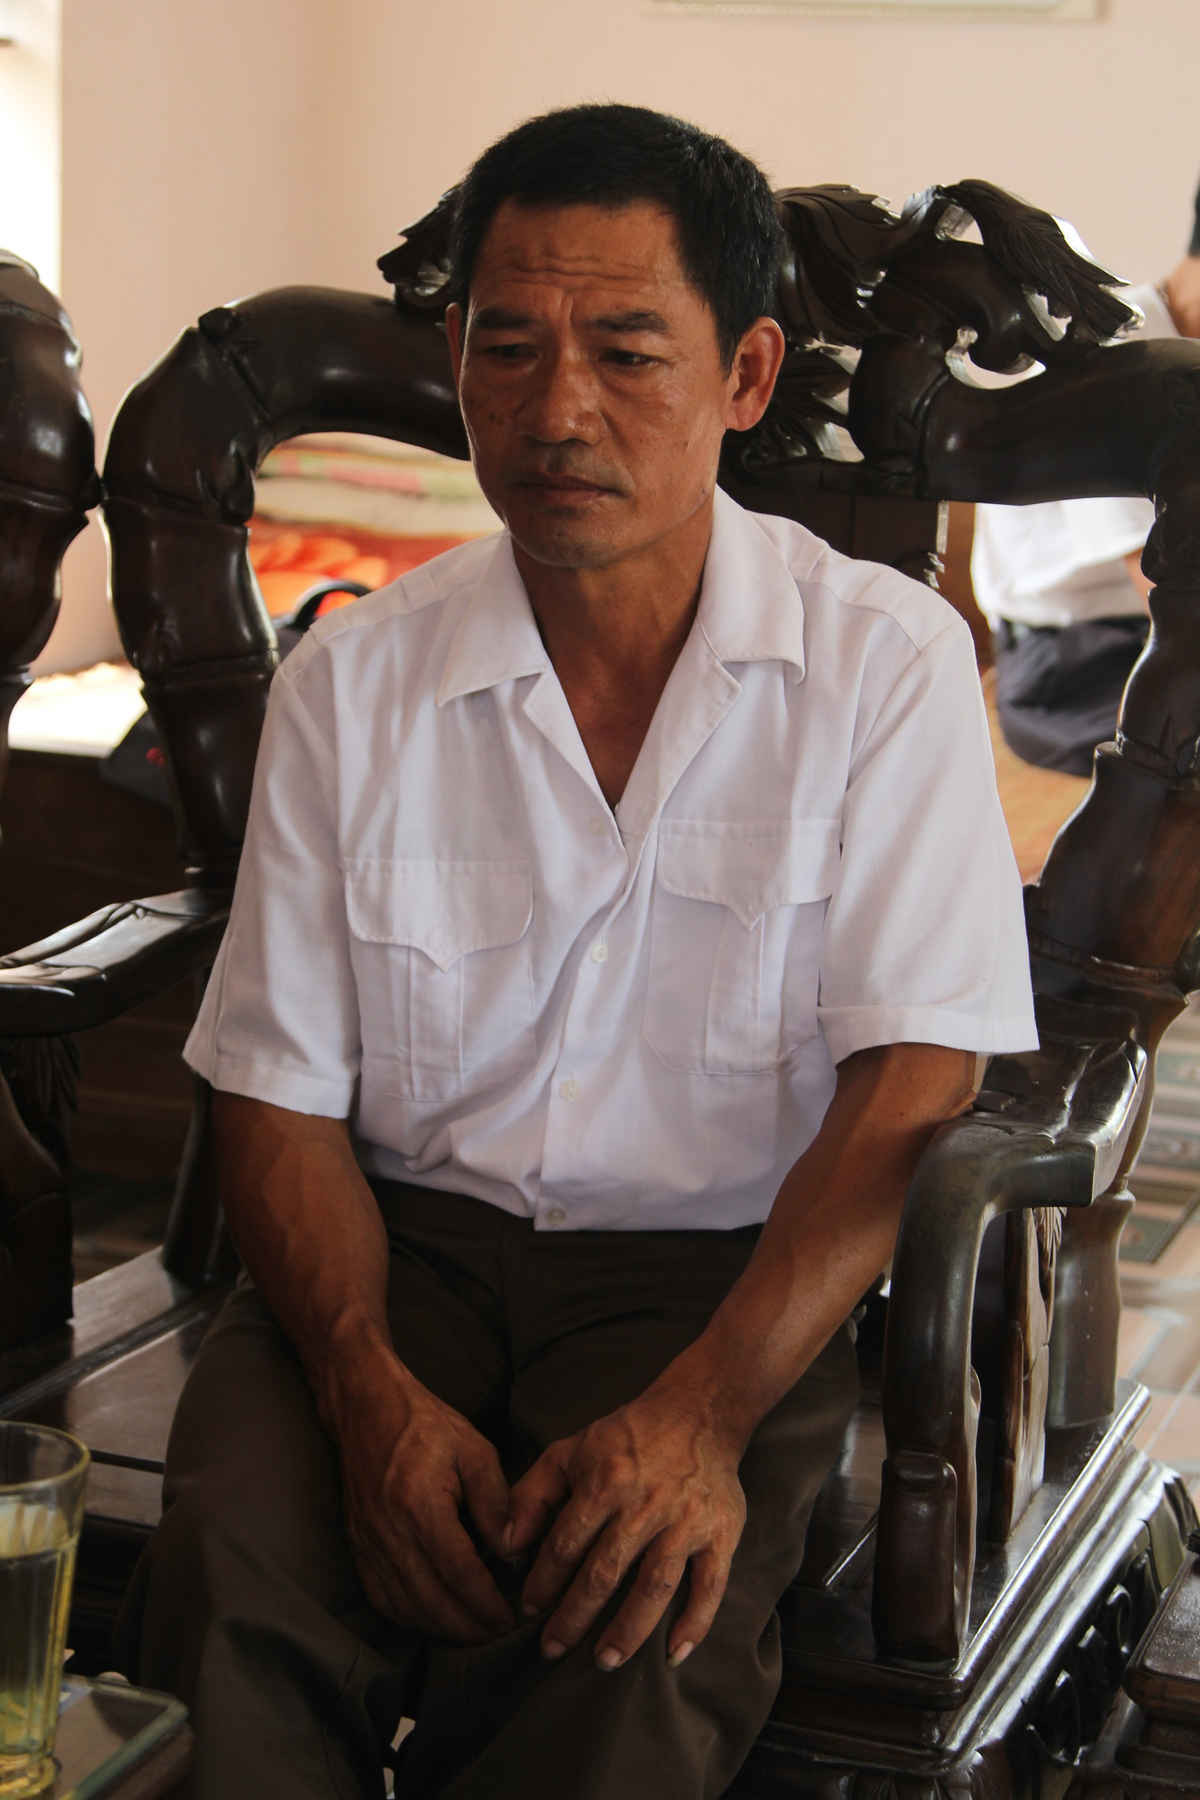 Ông Phạm Hữu Nhùn, hộ dân ở Tây Hưng, nói: “Hơn 20 năm qua (1995-2015), nhân dân chúng tôi đã kiến nghị lên các cấp chính quyền rất nhiều lần nhưng huyện vẫn chưa trả lời dứt điểm”.